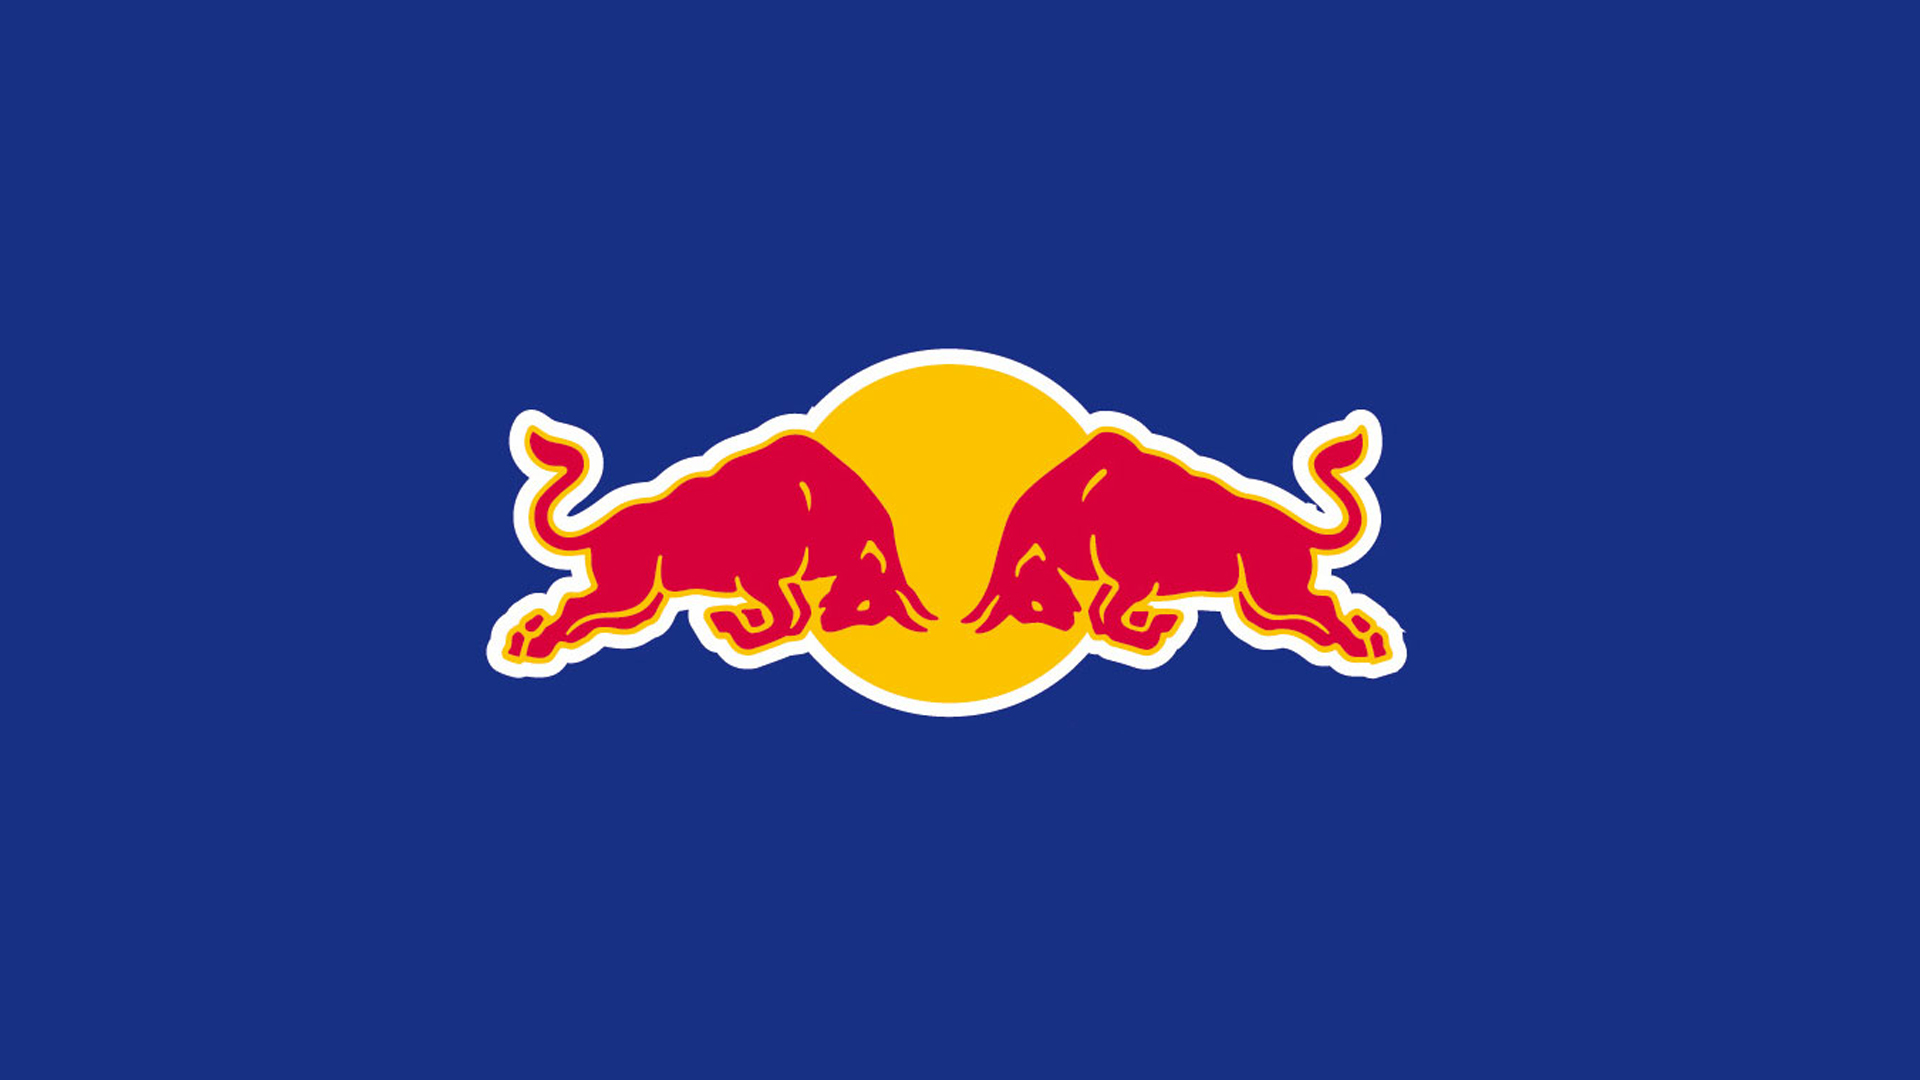 Red Bull Wallpaper - drarchanarathi WALLPAPER